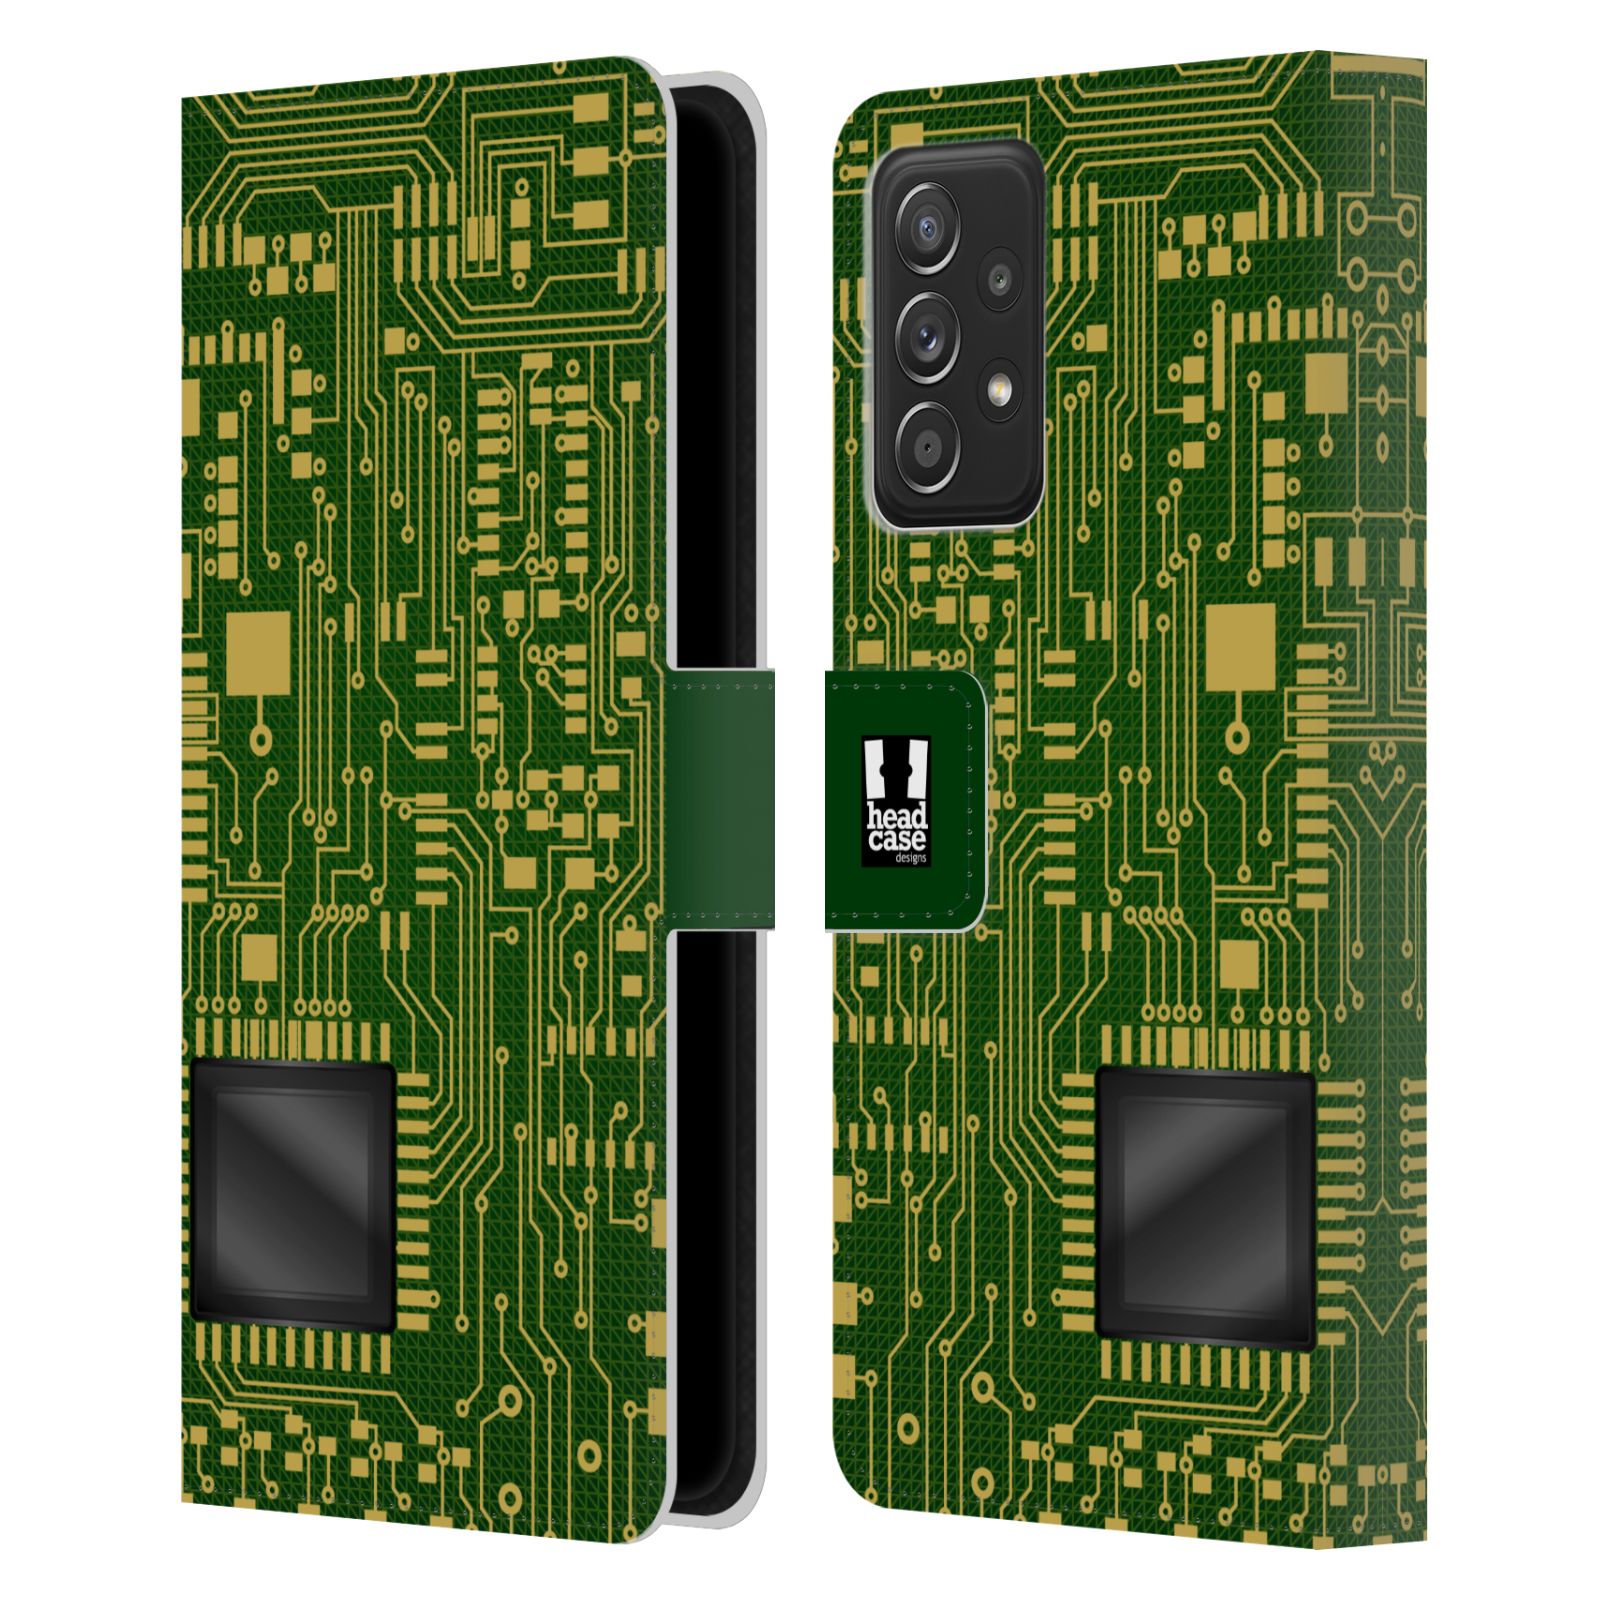 Pouzdro HEAD CASE na mobil Samsung Galaxy A52 / A52 5G / A52s 5G počítač základní deska zelená barva velký čip